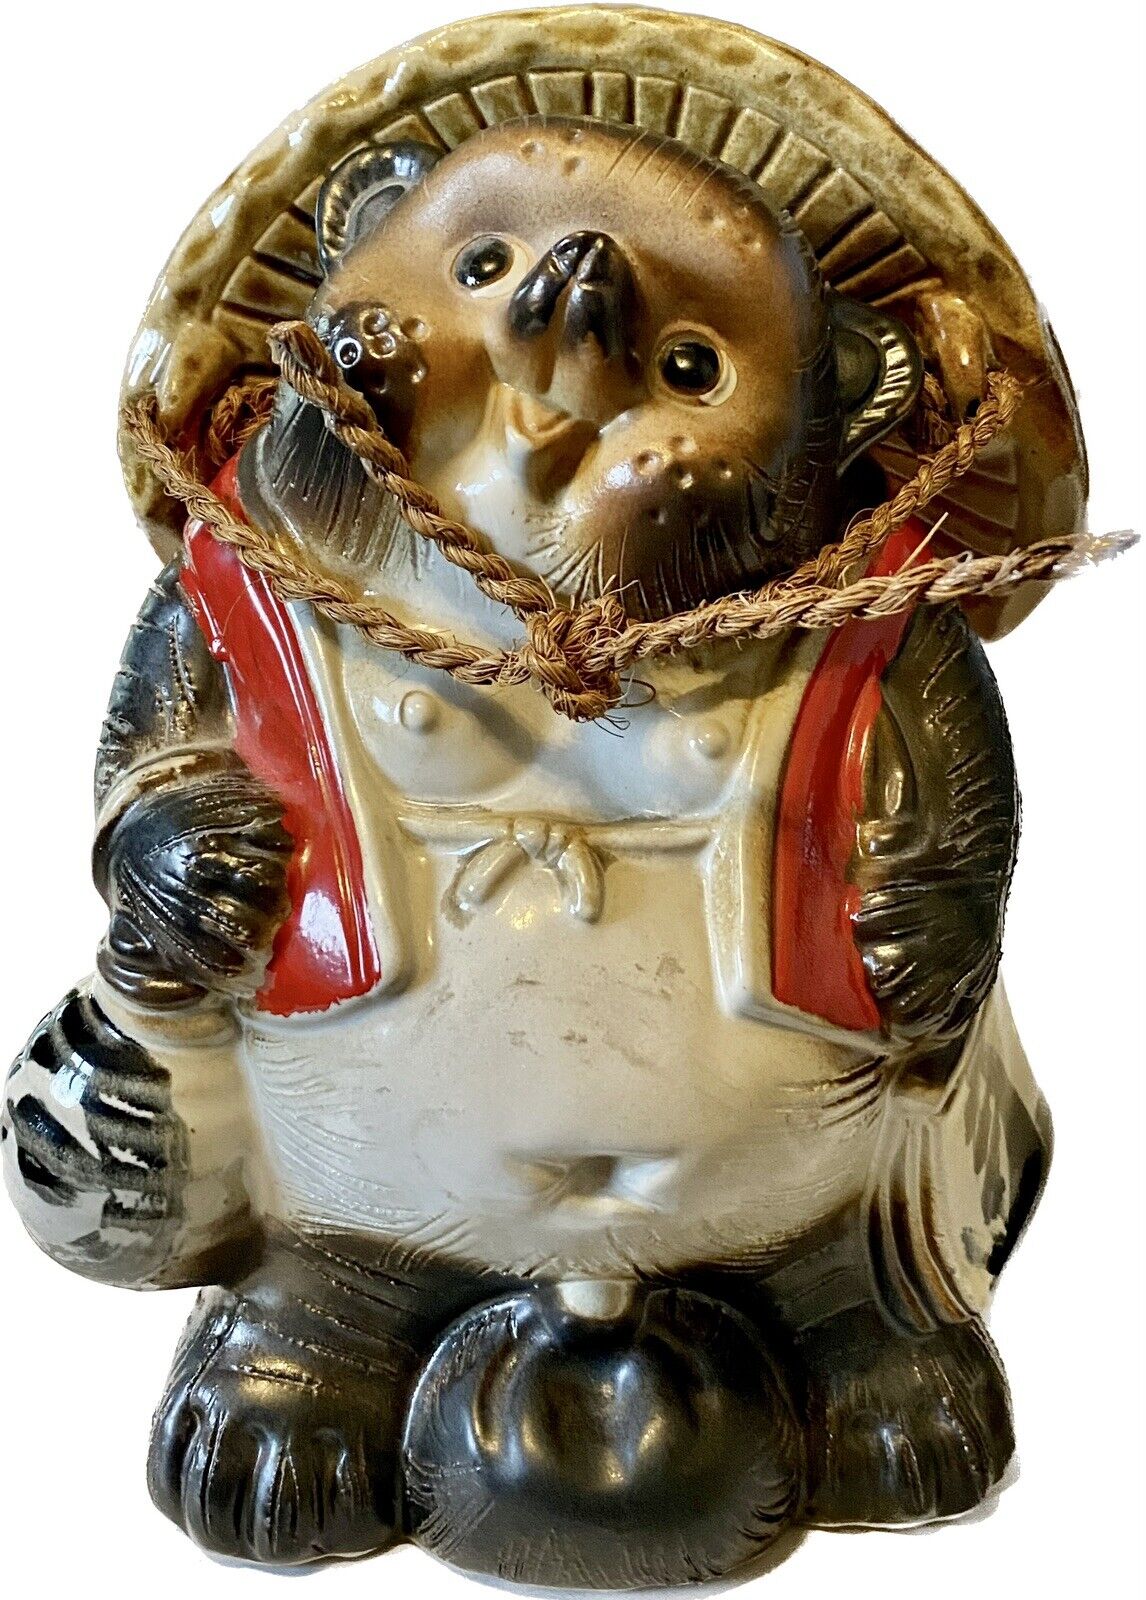 VTG Lucky Shigaraki-Ware Tanuki Raccoon Dog Tokkuri Pottery 10” H Garden Statue